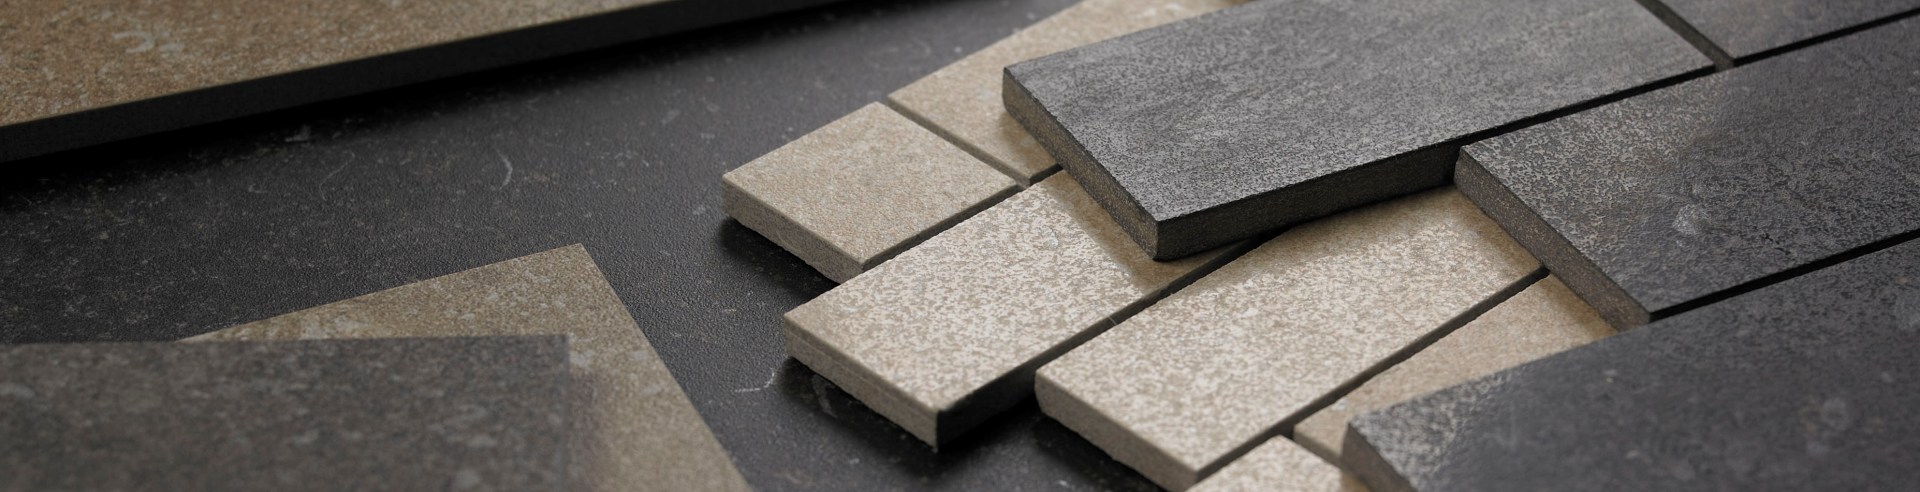 Защита керамической плитки